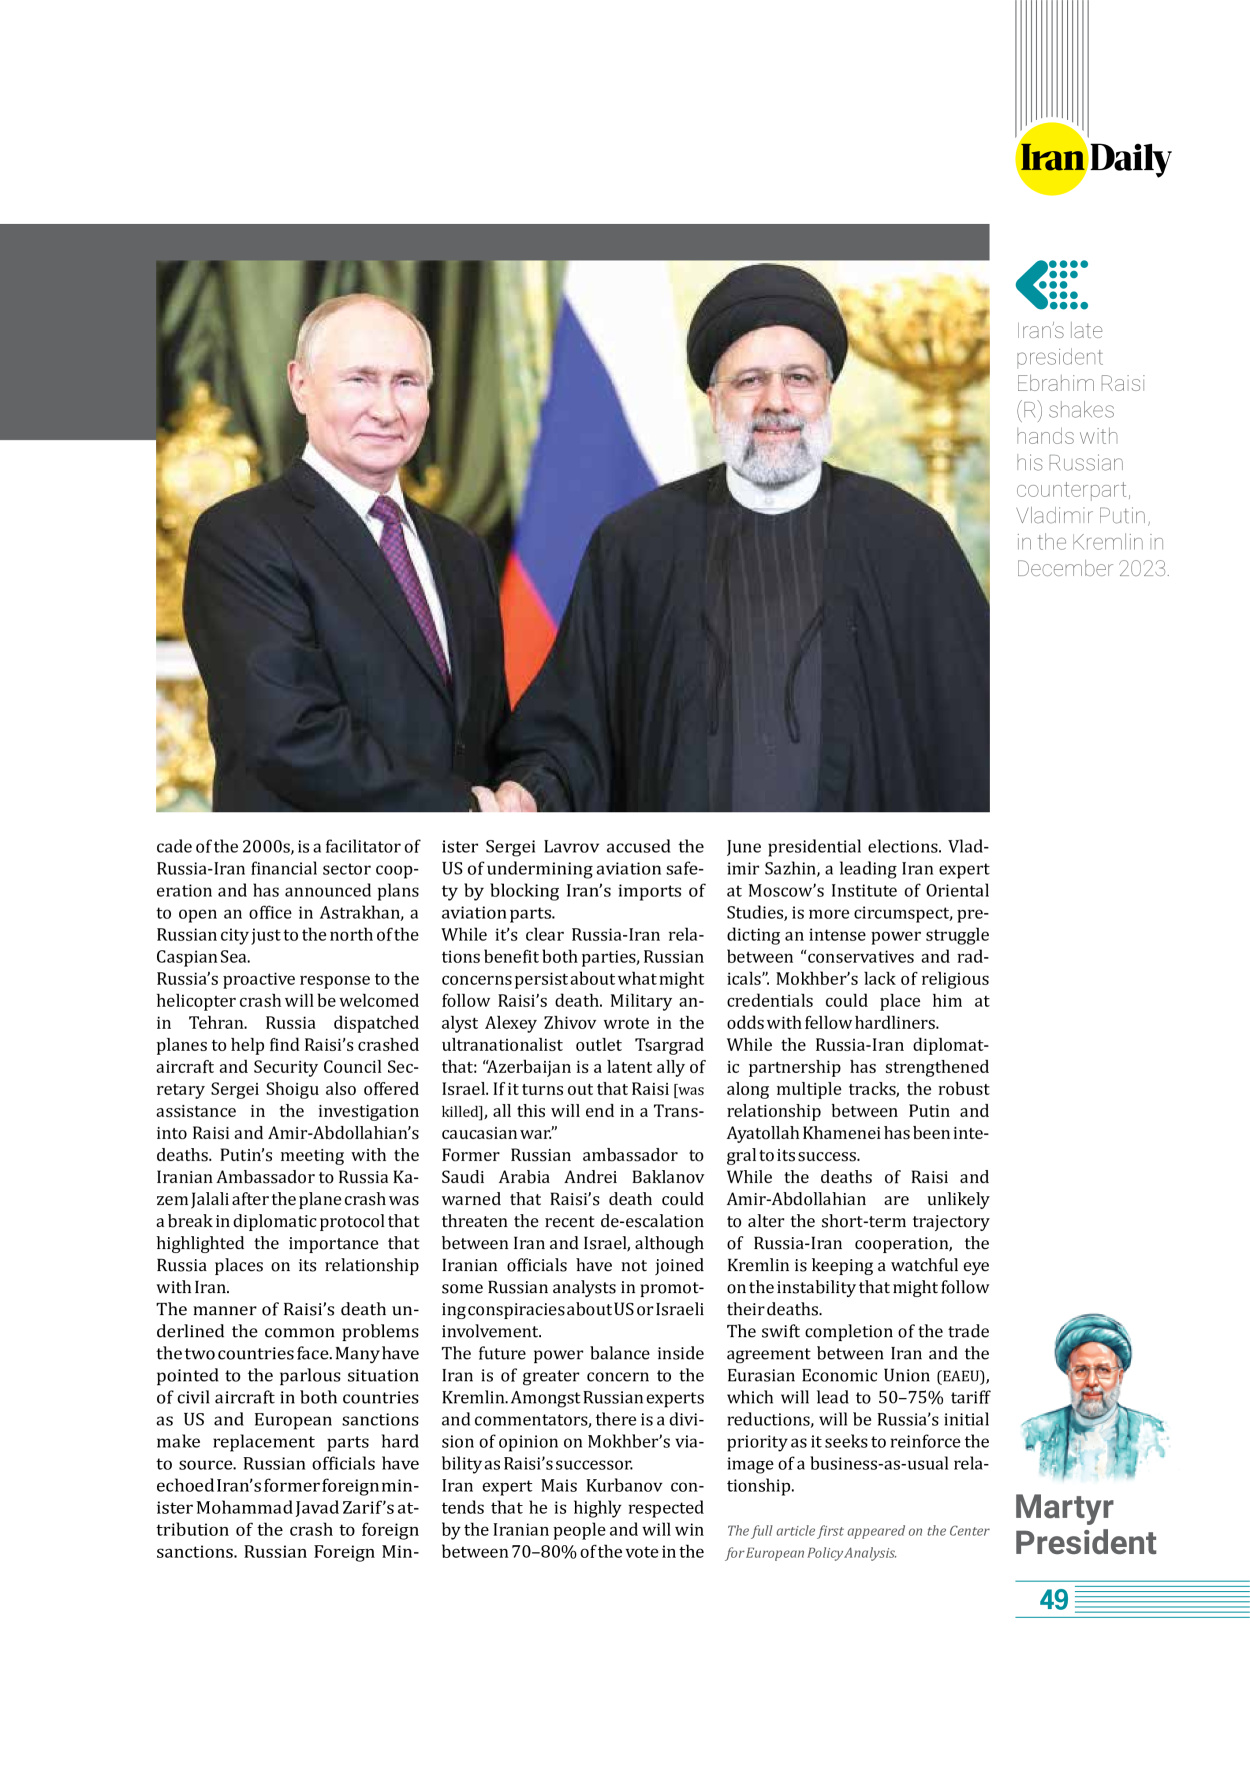 روزنامه ایران - ویژه نامه وِزه نامه چهلم شهید رییسی( انگلیسی) - ۱۷ تیر ۱۴۰۳ - صفحه ۴۹